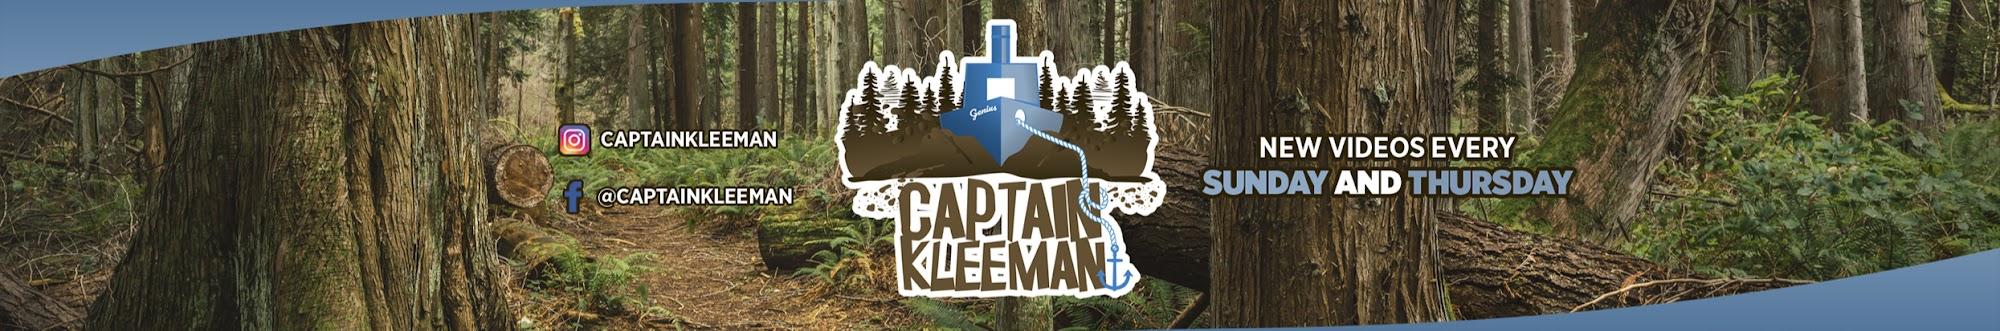 Captain Kleeman